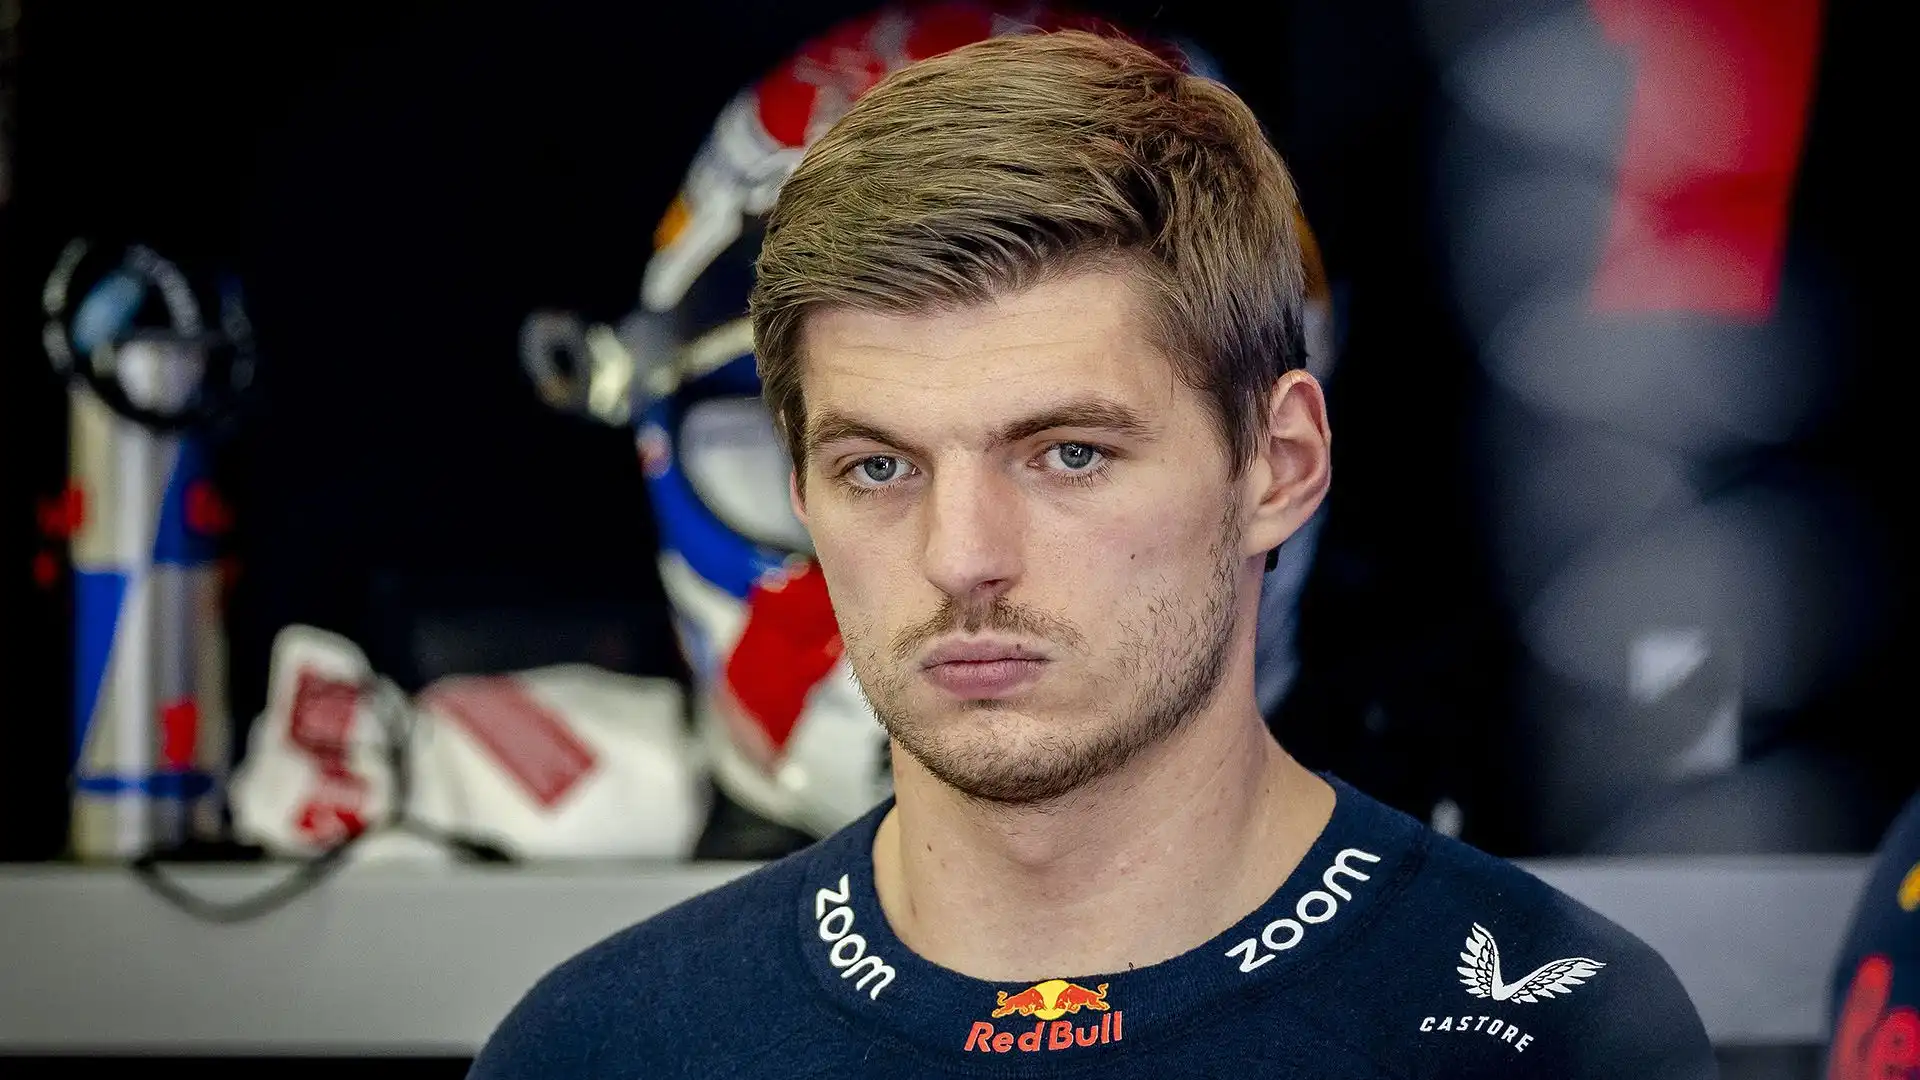 La Red Bull e Max Verstappen hanno impressionato nei test in Bahrain